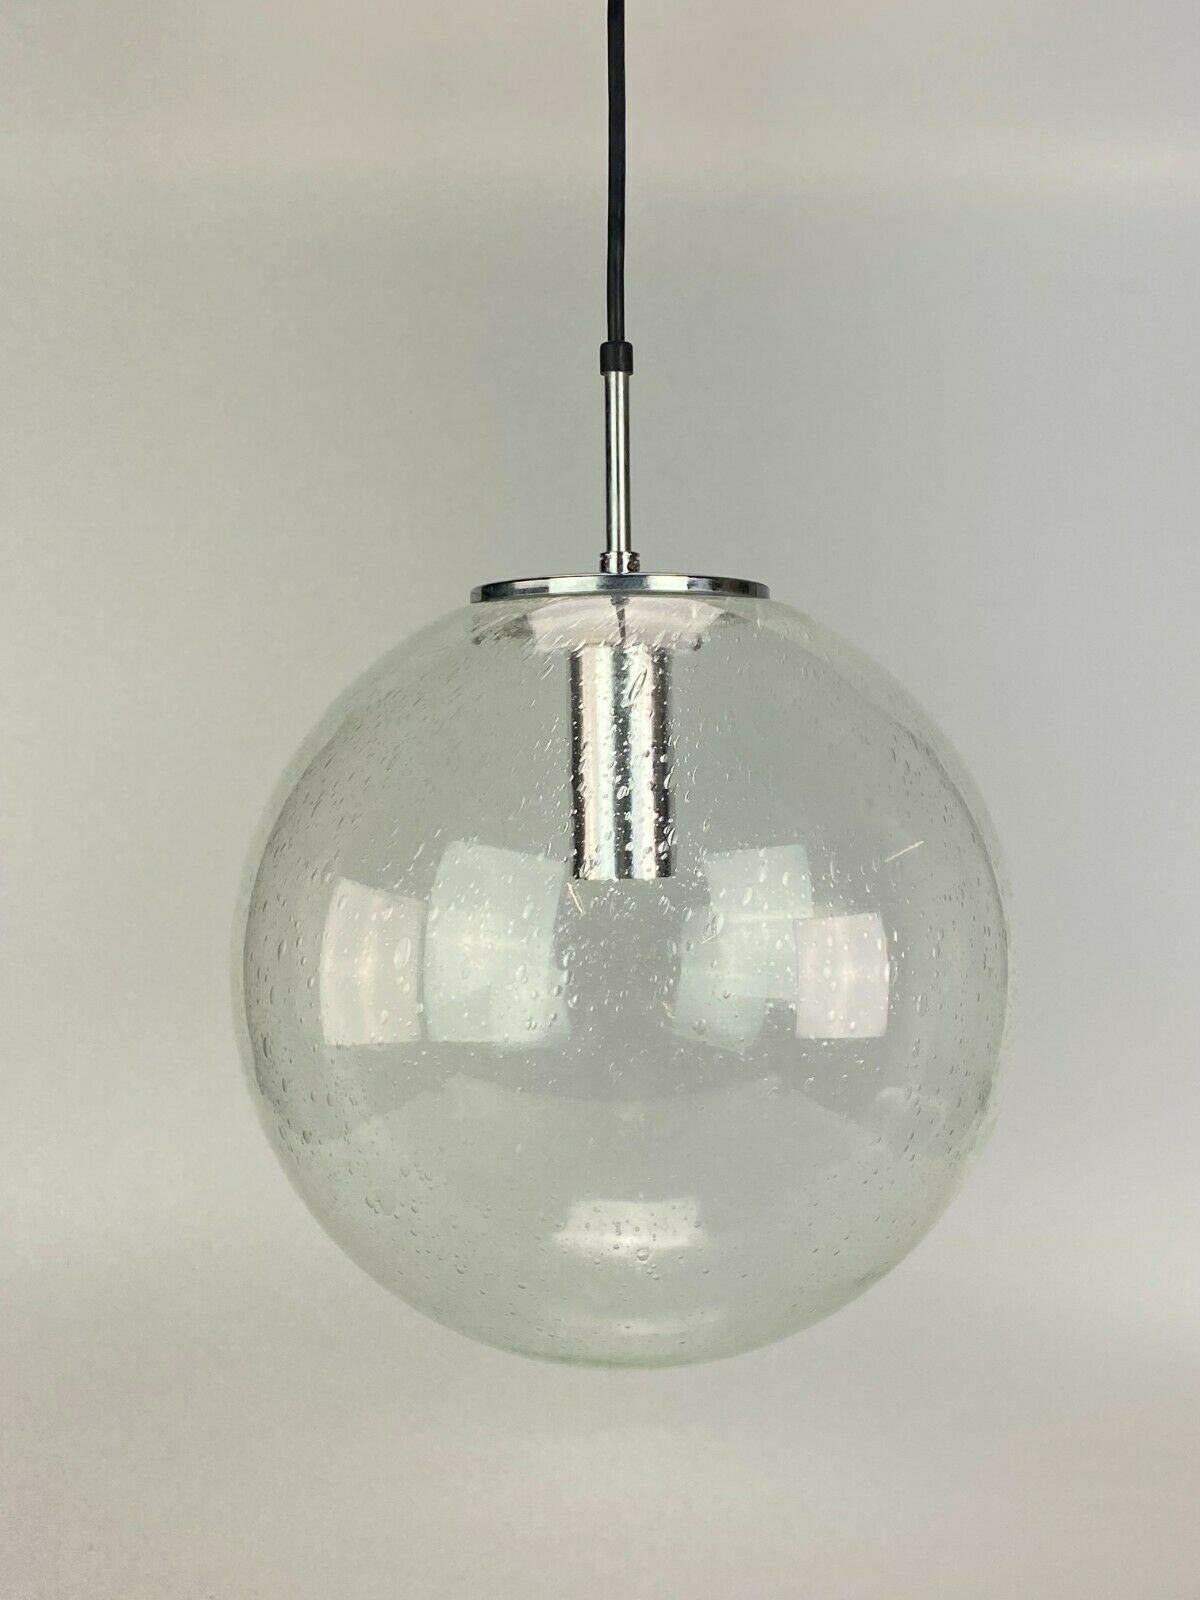 XL 60s 70s Lamp light ceiling lamp Limburg spherical lamp Ball Design 60s

Object: ceiling lamp

Manufacturer: Glashütte Limburg Model 